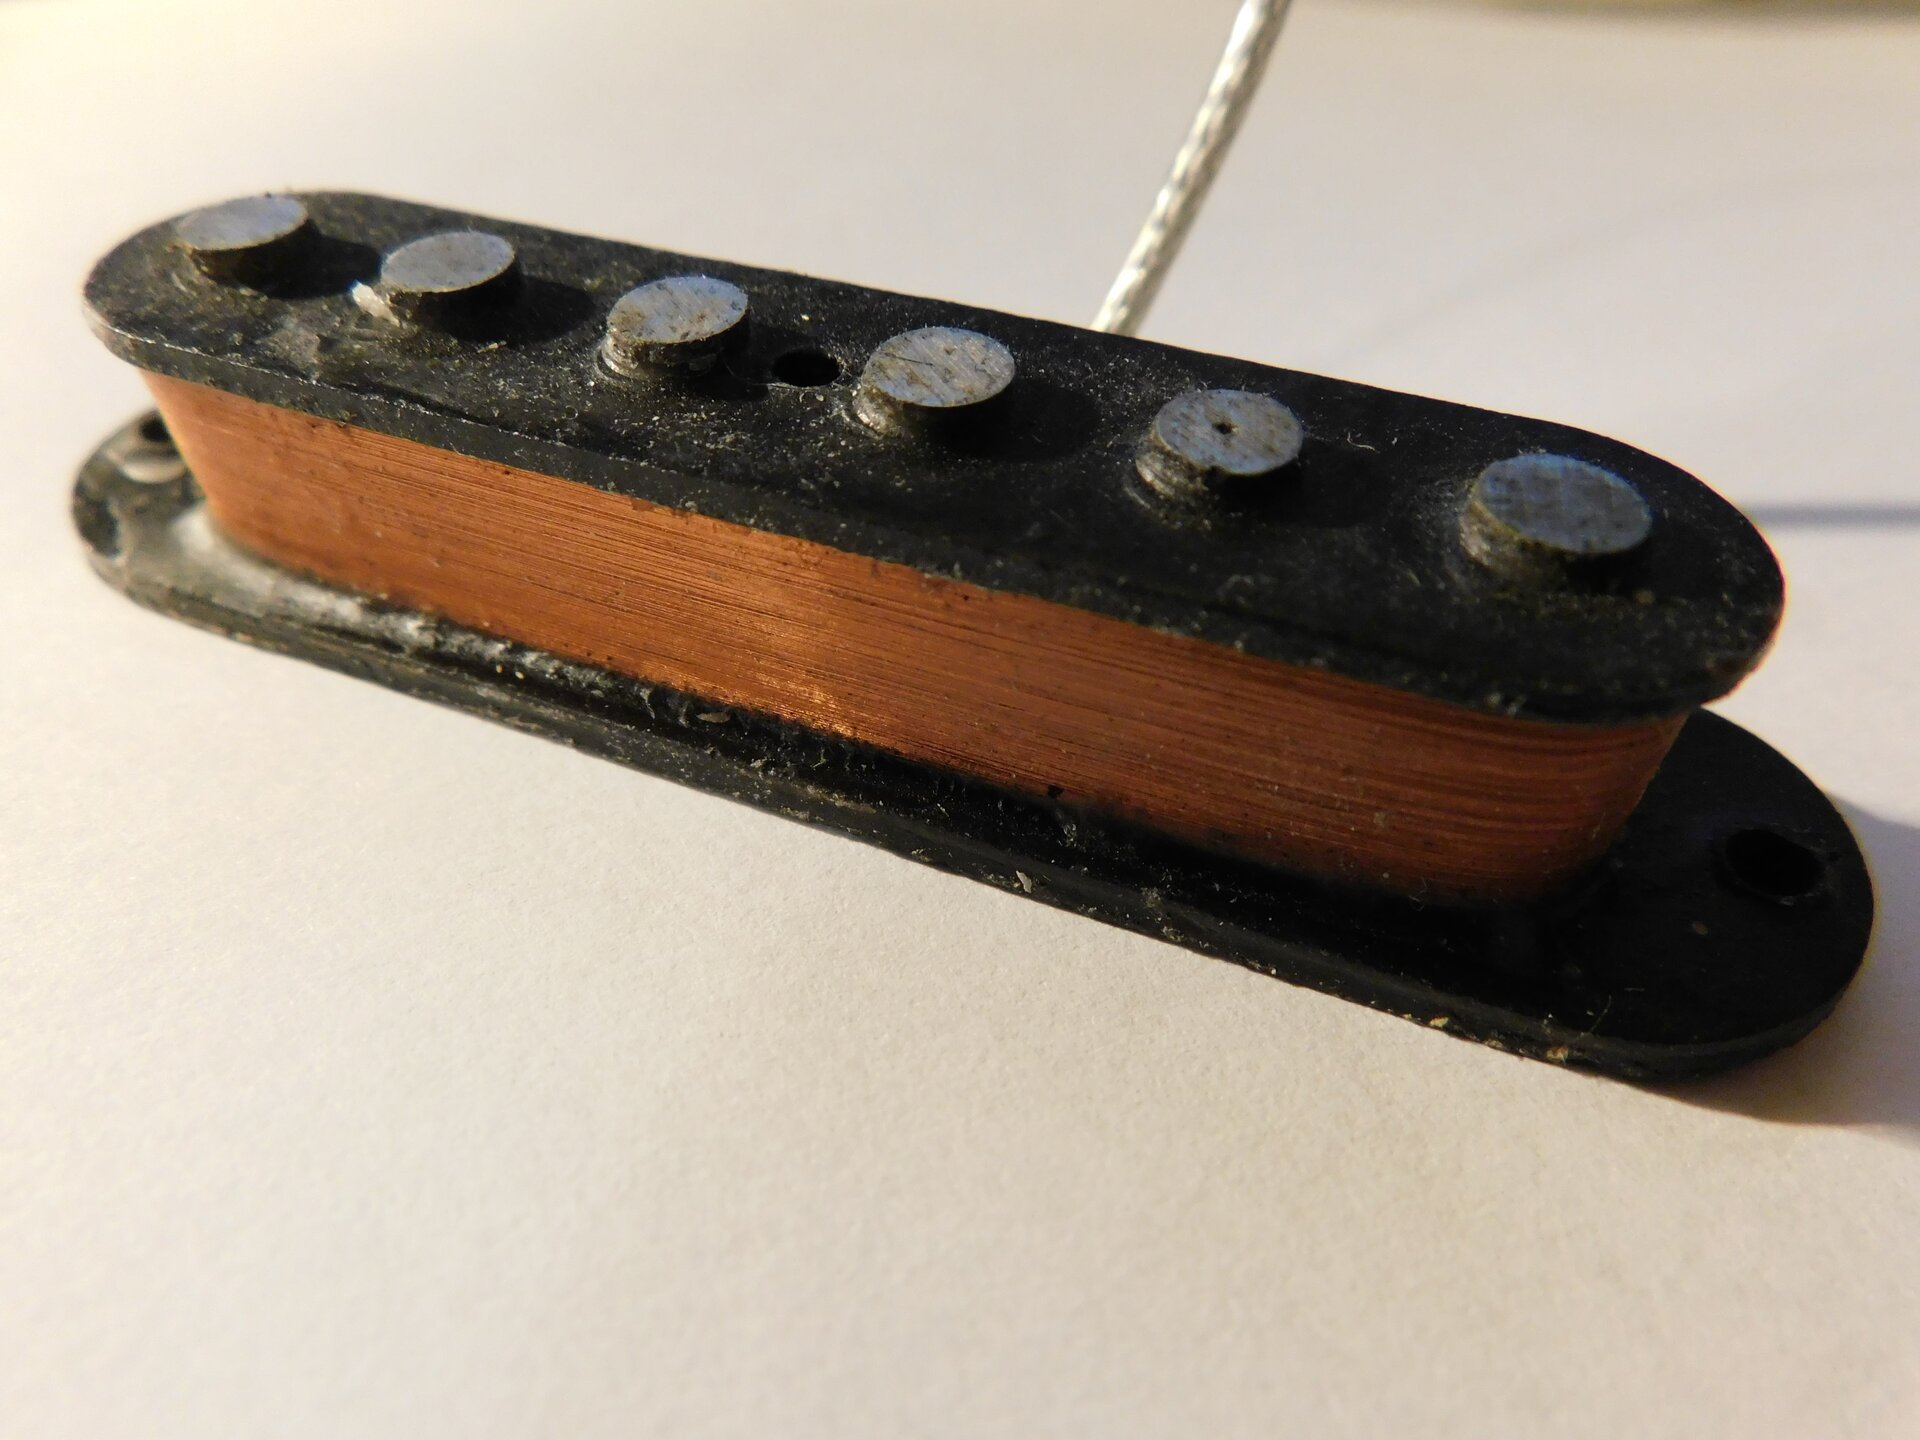 Fot. 1. Na fotografii pokazano przetwornik gitarowy pojedynczy. Sześć pionowych bolców umocowanych jest w jednej oprawie, na którą nawinięto miedziany drut.